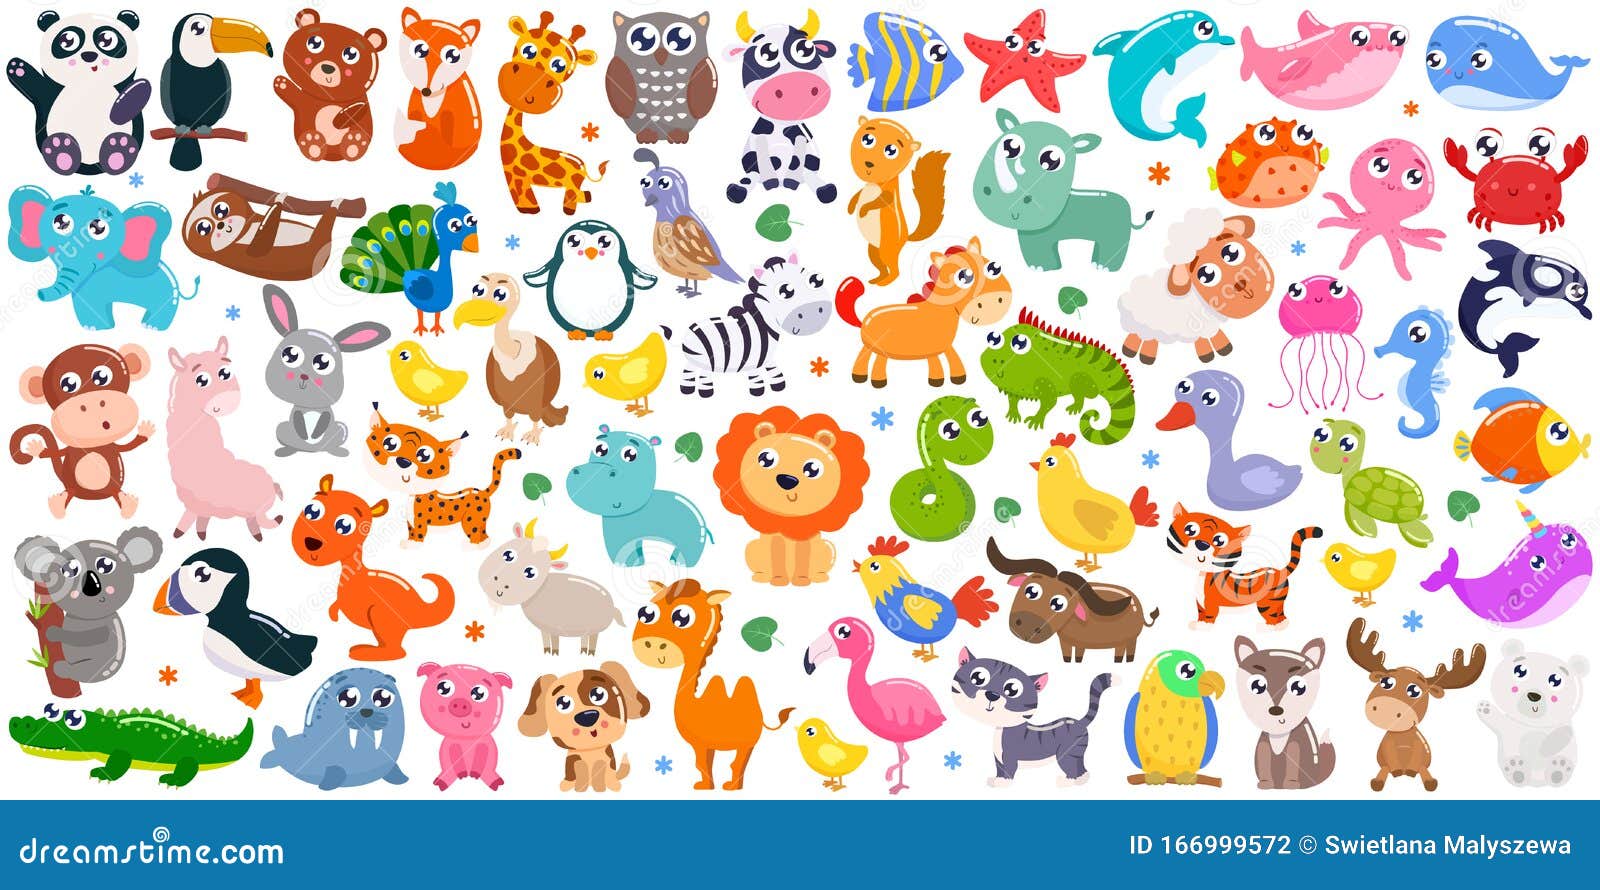 1090232 imágenes de Animales de la granja para colorear  Imágenes fotos  y vectores de stock  Shutterstock